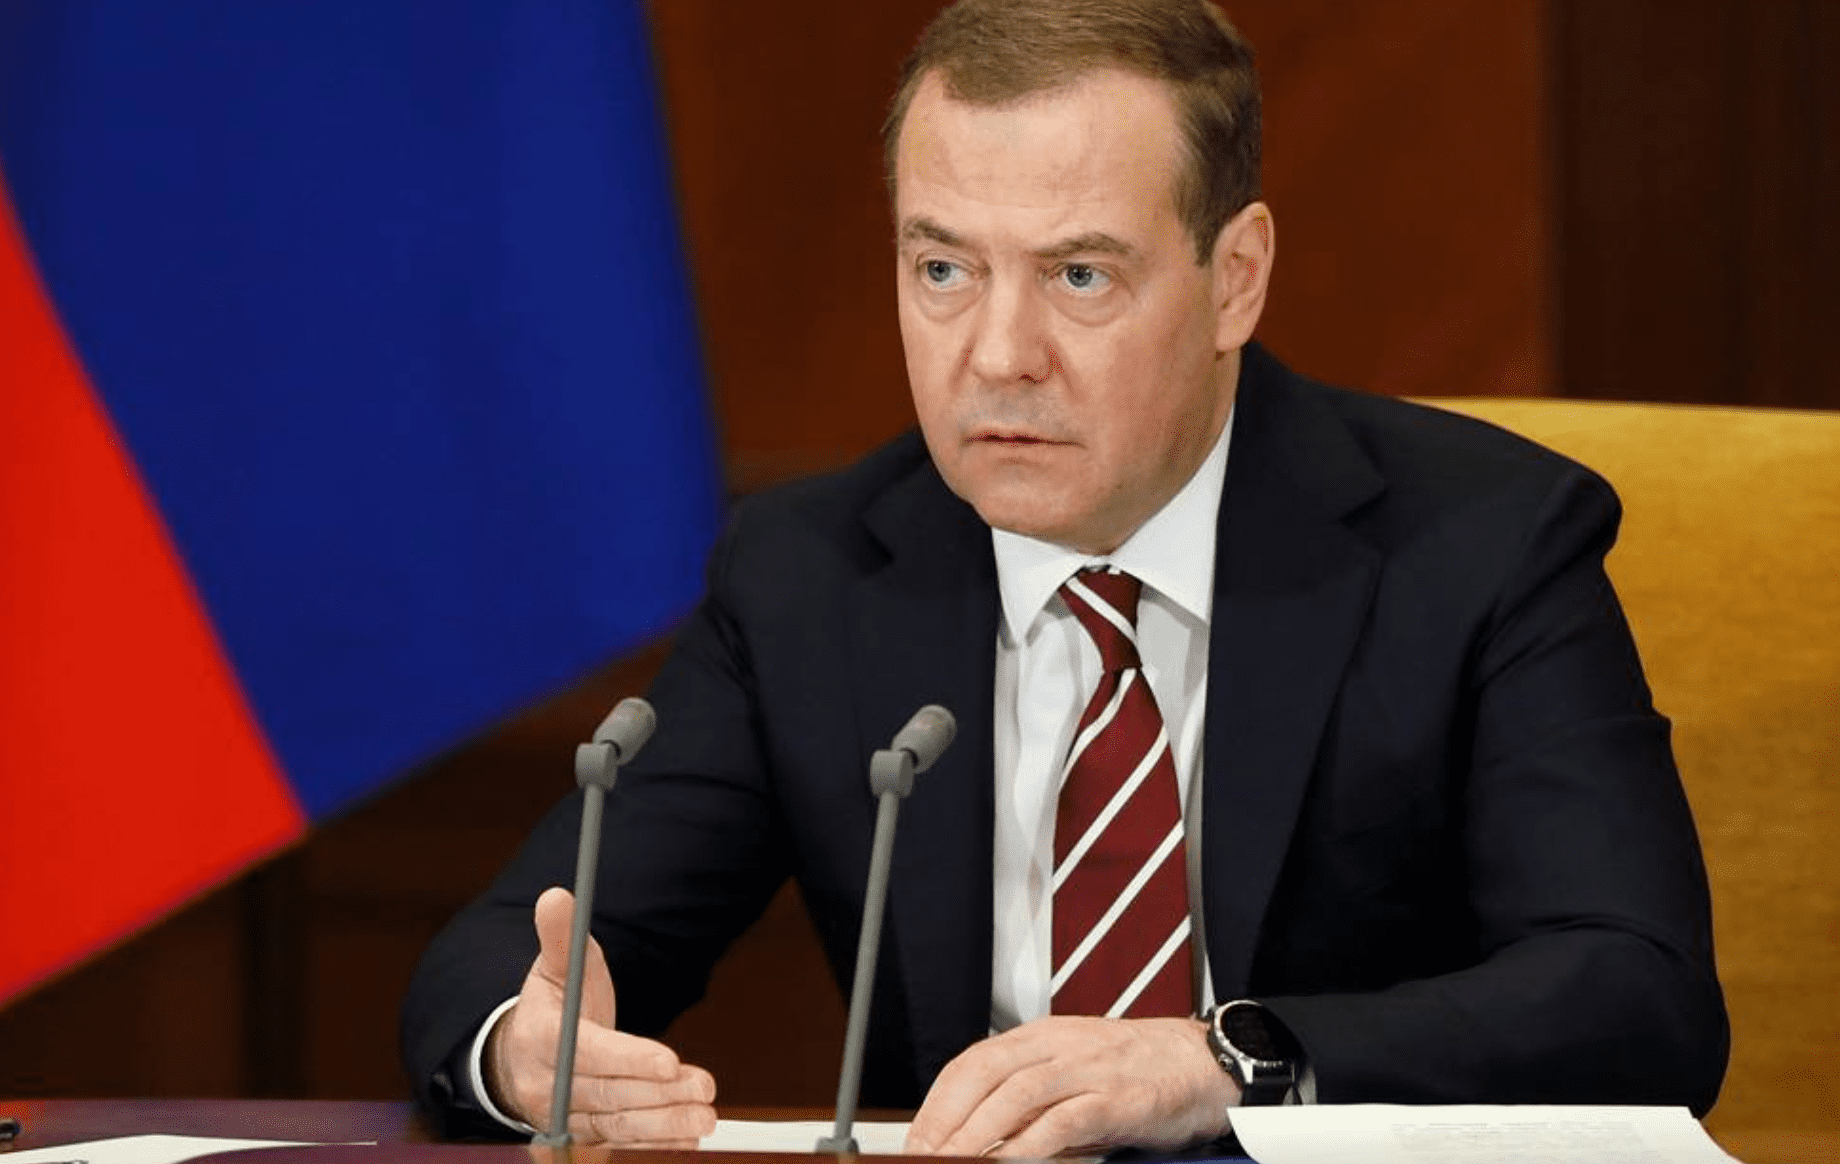 Medvedev dimentica l'imperialismo di Putin e attacca il colonialismo: "Le Malvinas sono argentine"